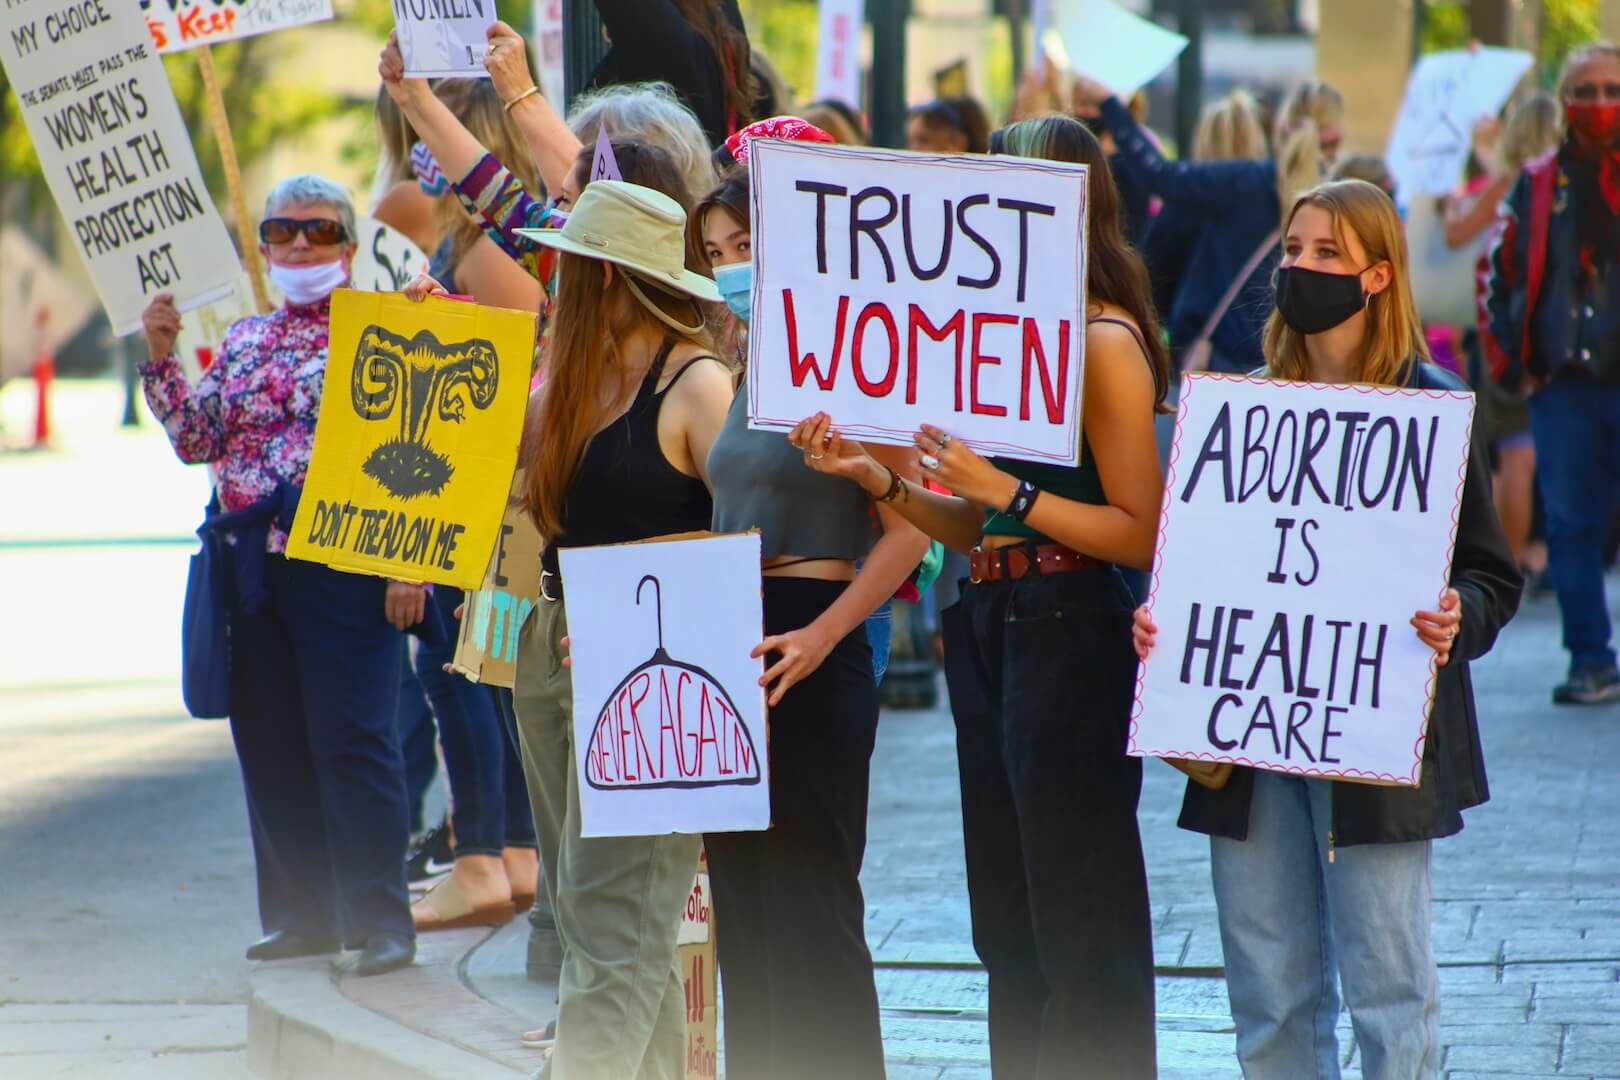 Mehrere Personen mit Demoschildern in der Hand, auf den Schildern steht unter anderem der Text "abortion is health care" und "trust women", auf einem Schild ist ein Kleiderbügel gezeichnet und der Text "never again" geschrieben.